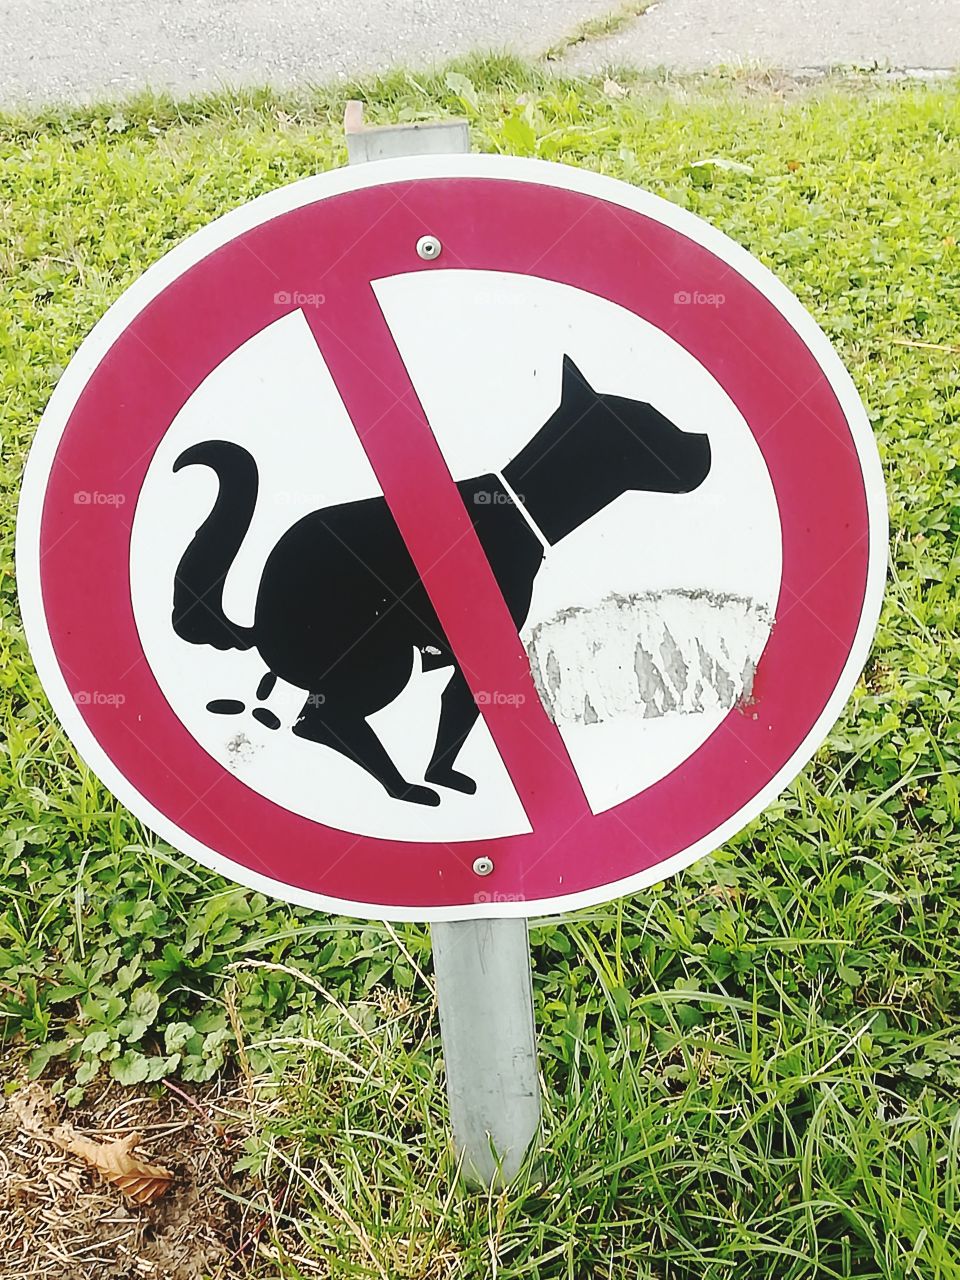 No pup